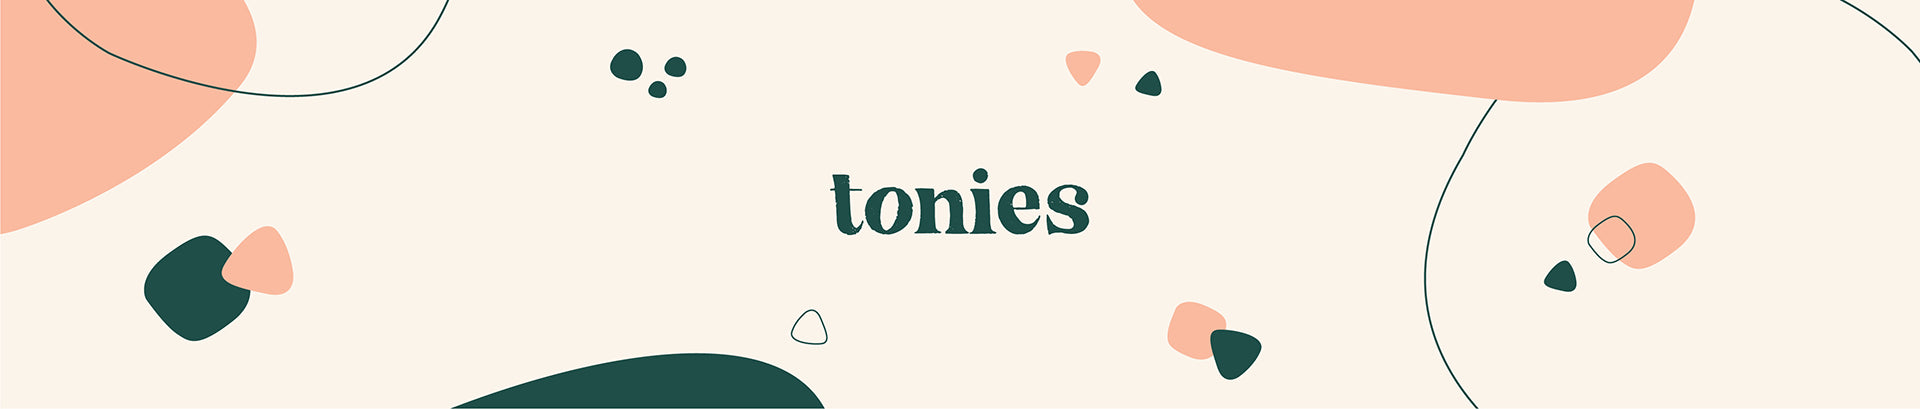 tonies Tonie-Chuchote, Fruits des Bois - Boutique en ligne 42things